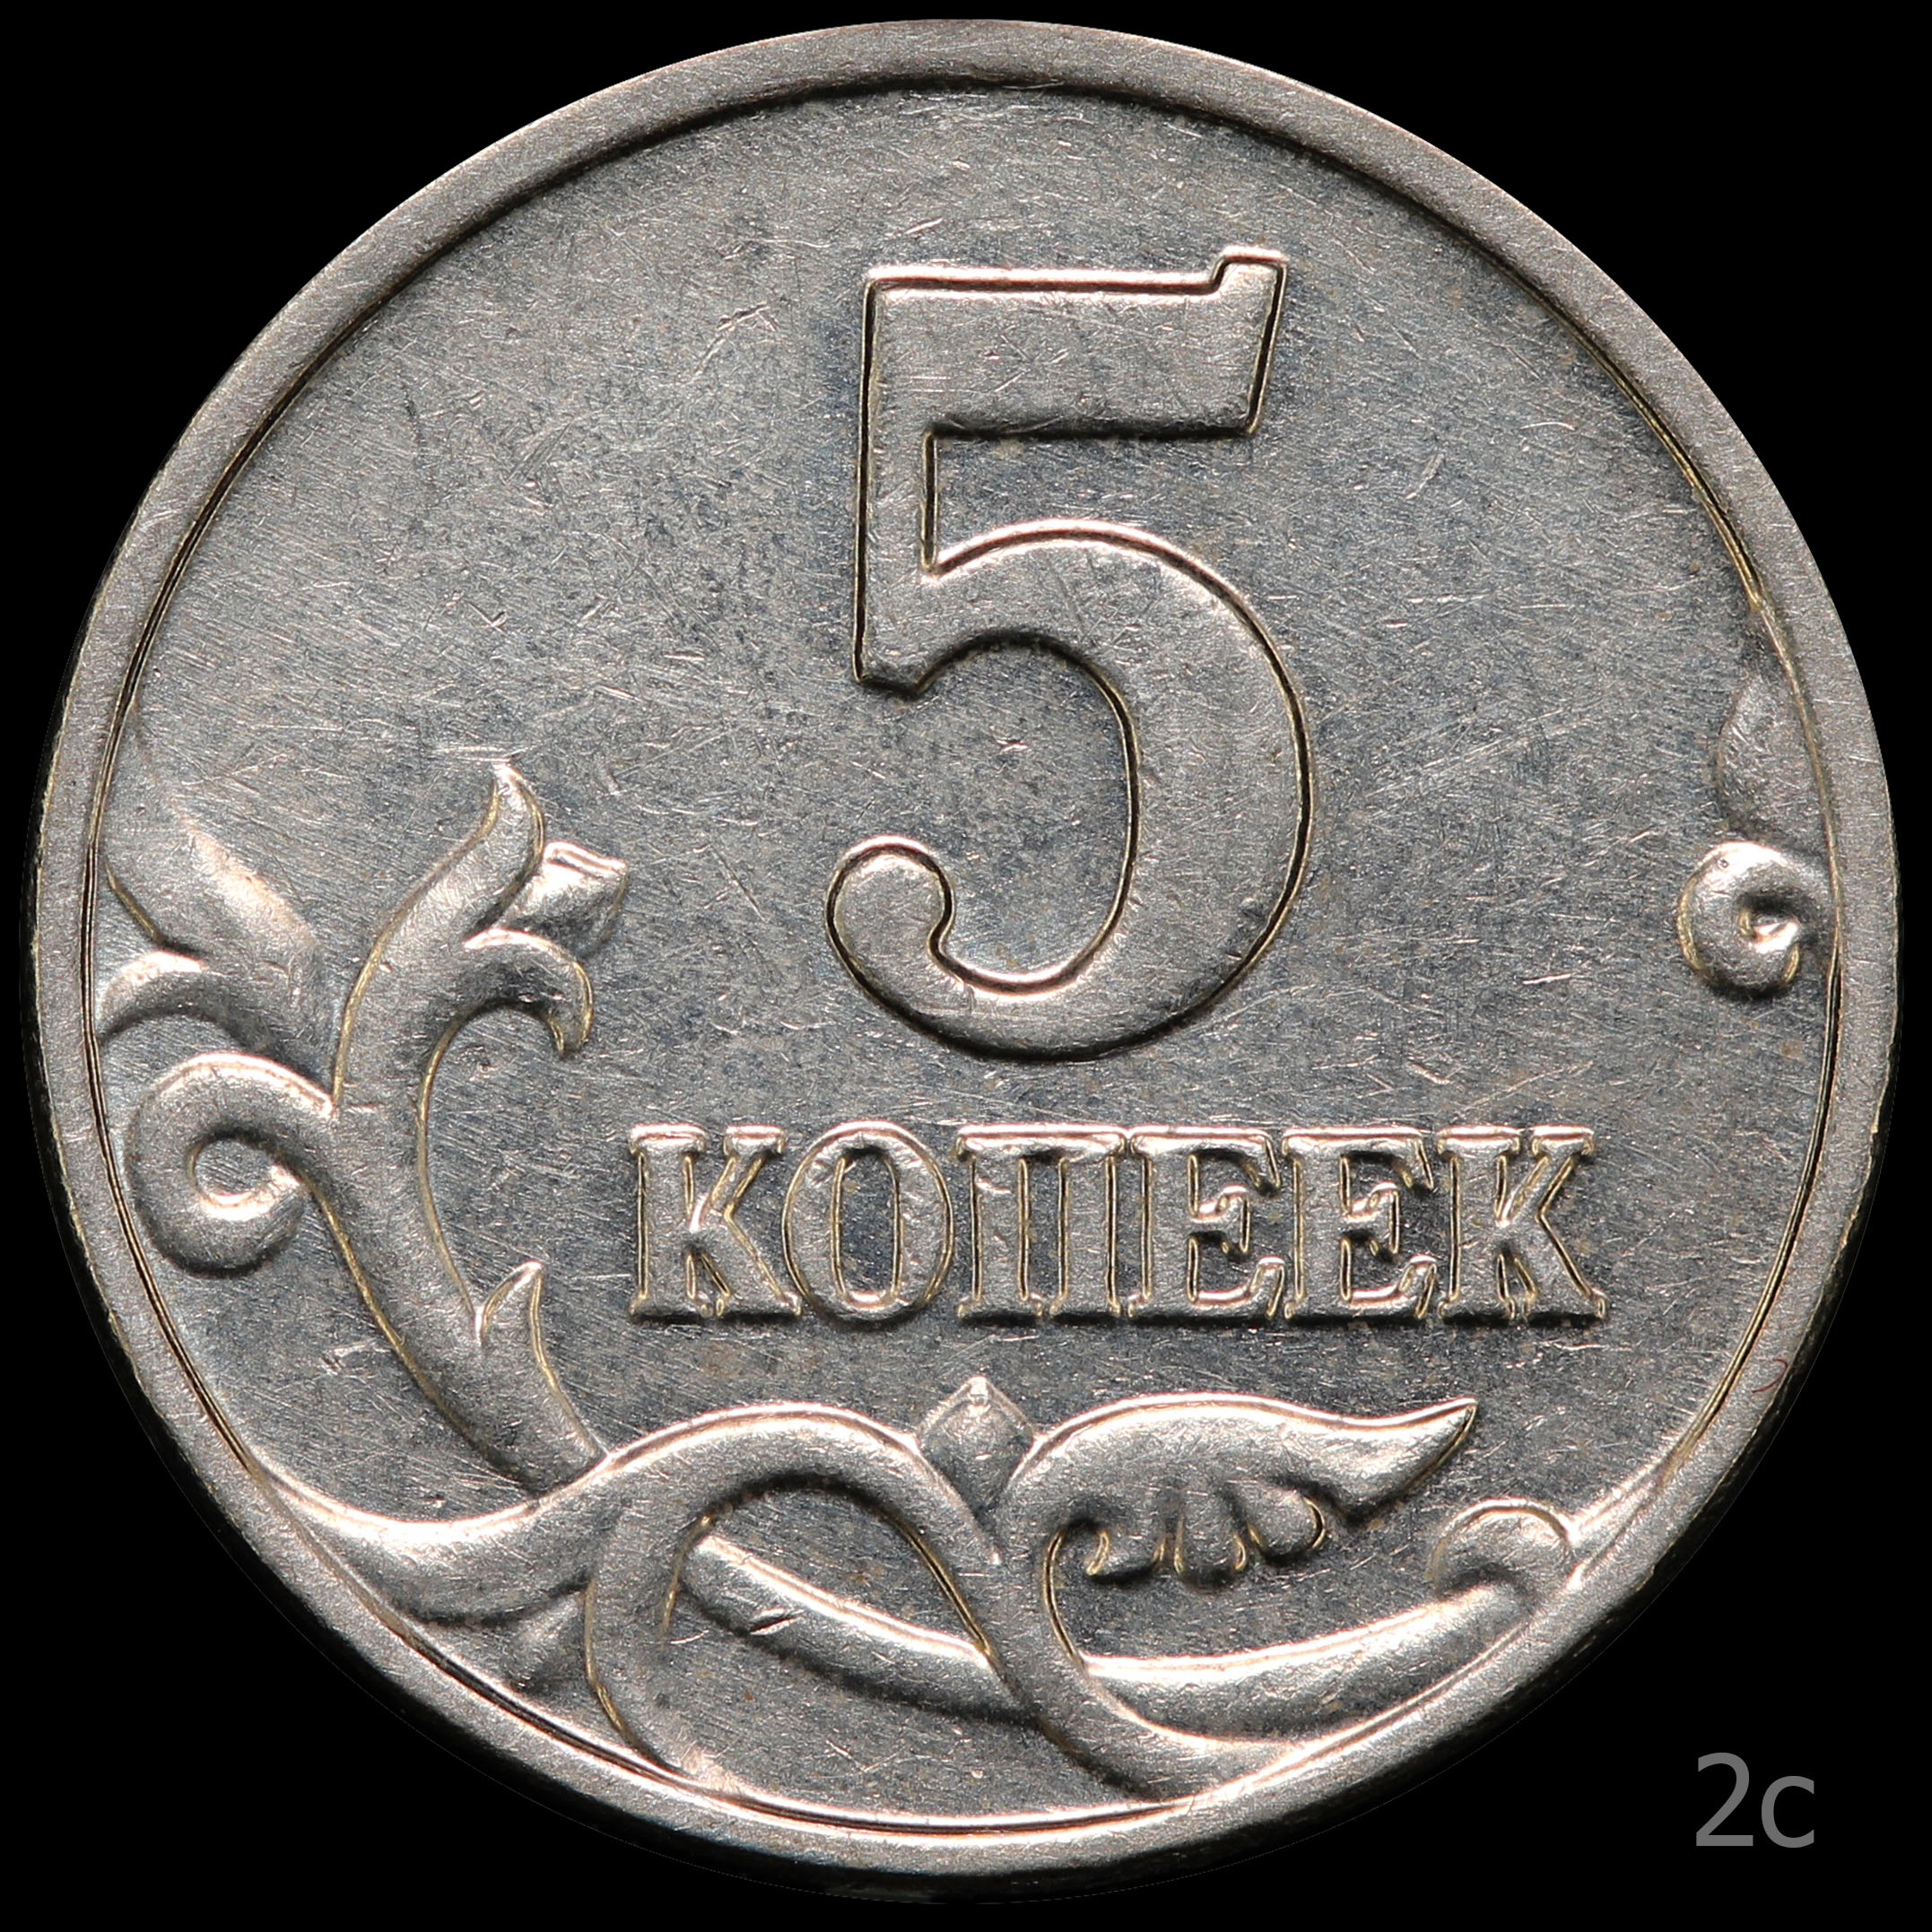 5 Копеек 2003. 5 Копеек 2003 обычная. Штемпель для монет. 3 рубля 5 копеек